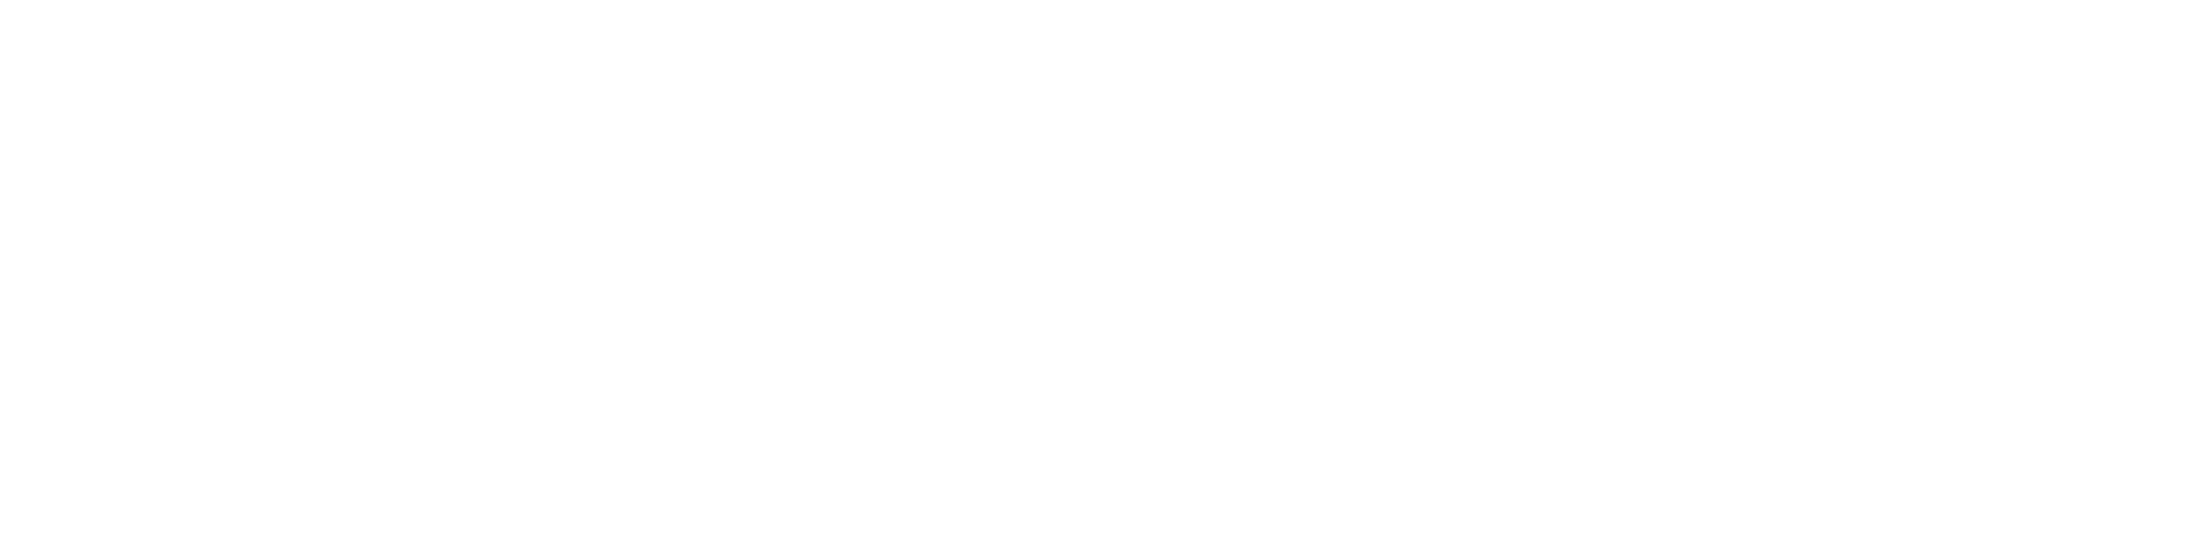 Münzer Bioindustrie GmbH logo